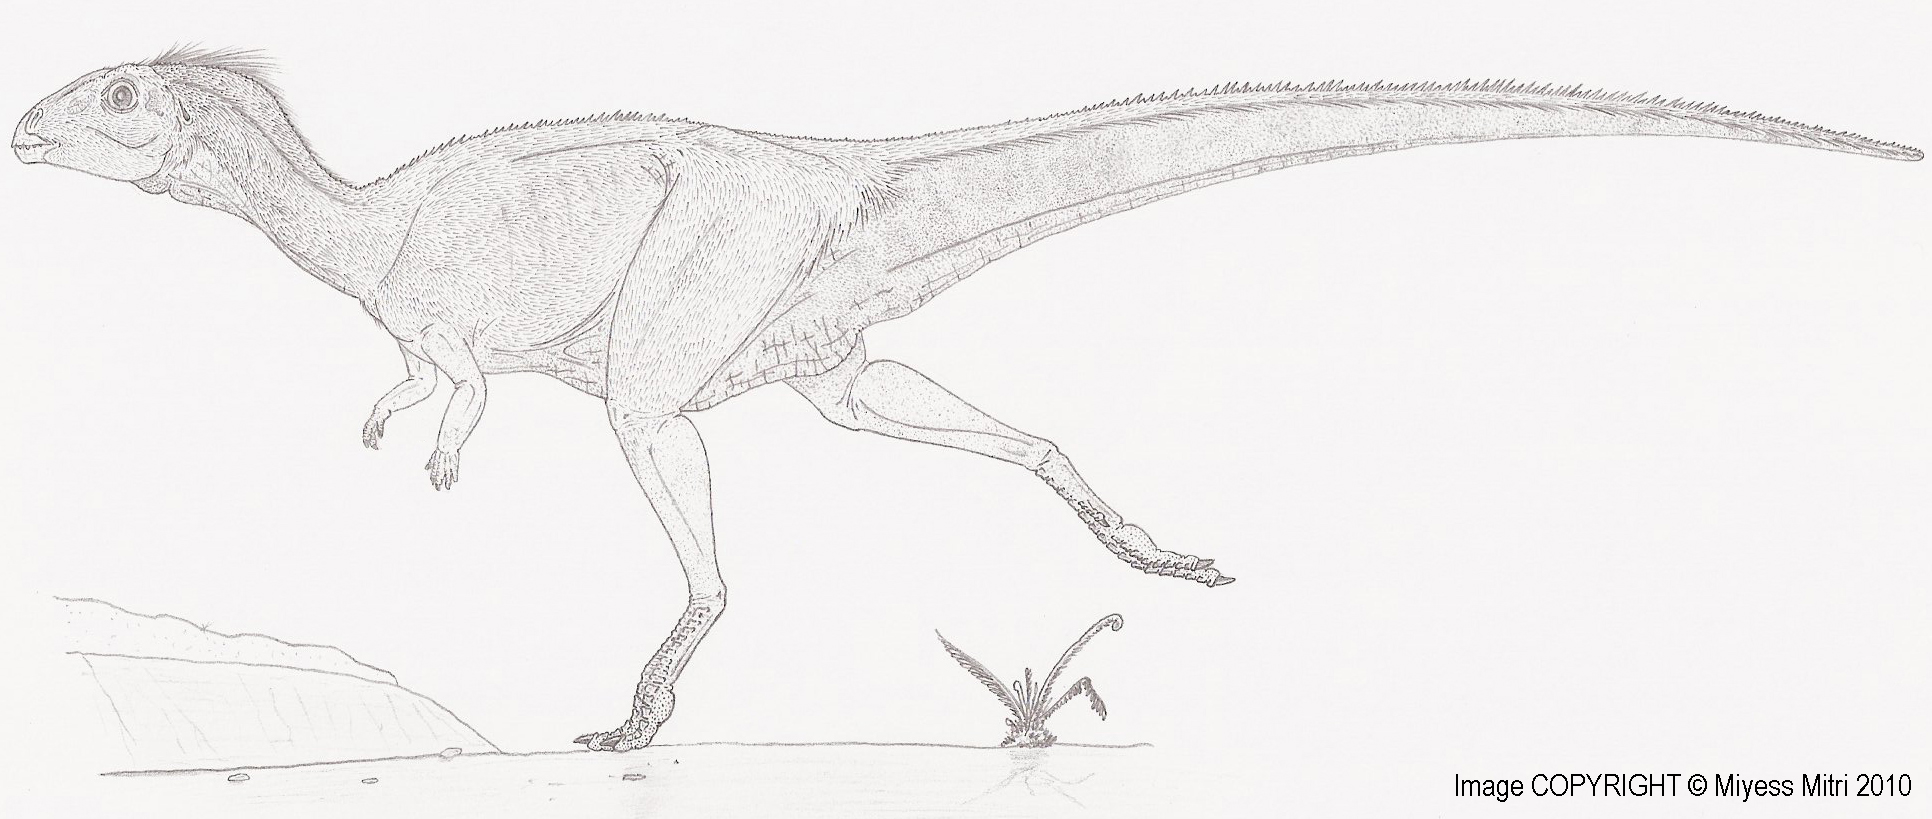 Qantassaurus intrepidus